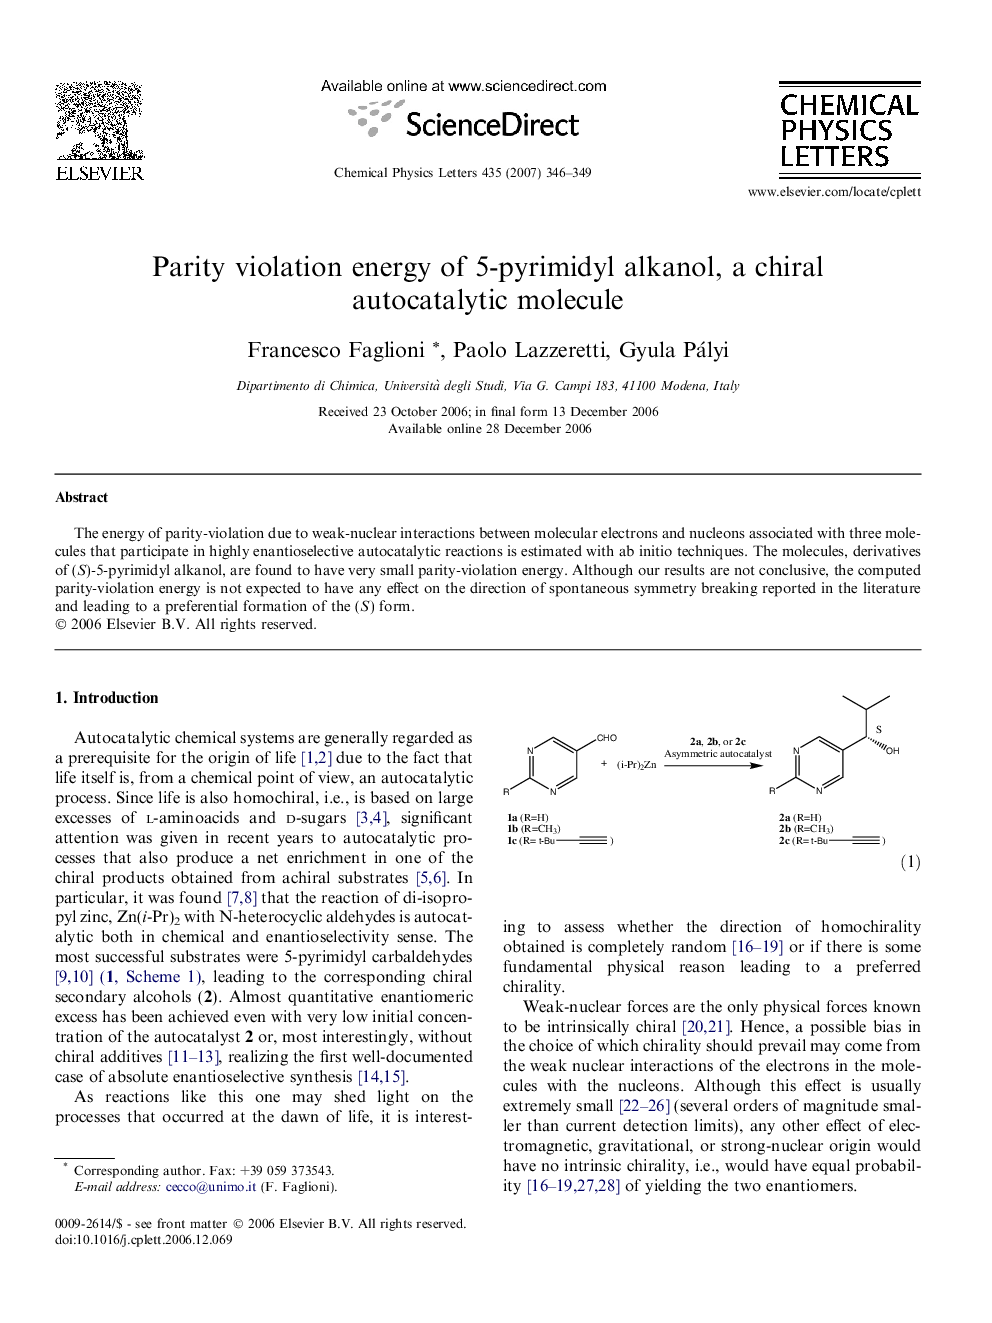 Parity violation energy of 5-pyrimidyl alkanol, a chiral autocatalytic molecule